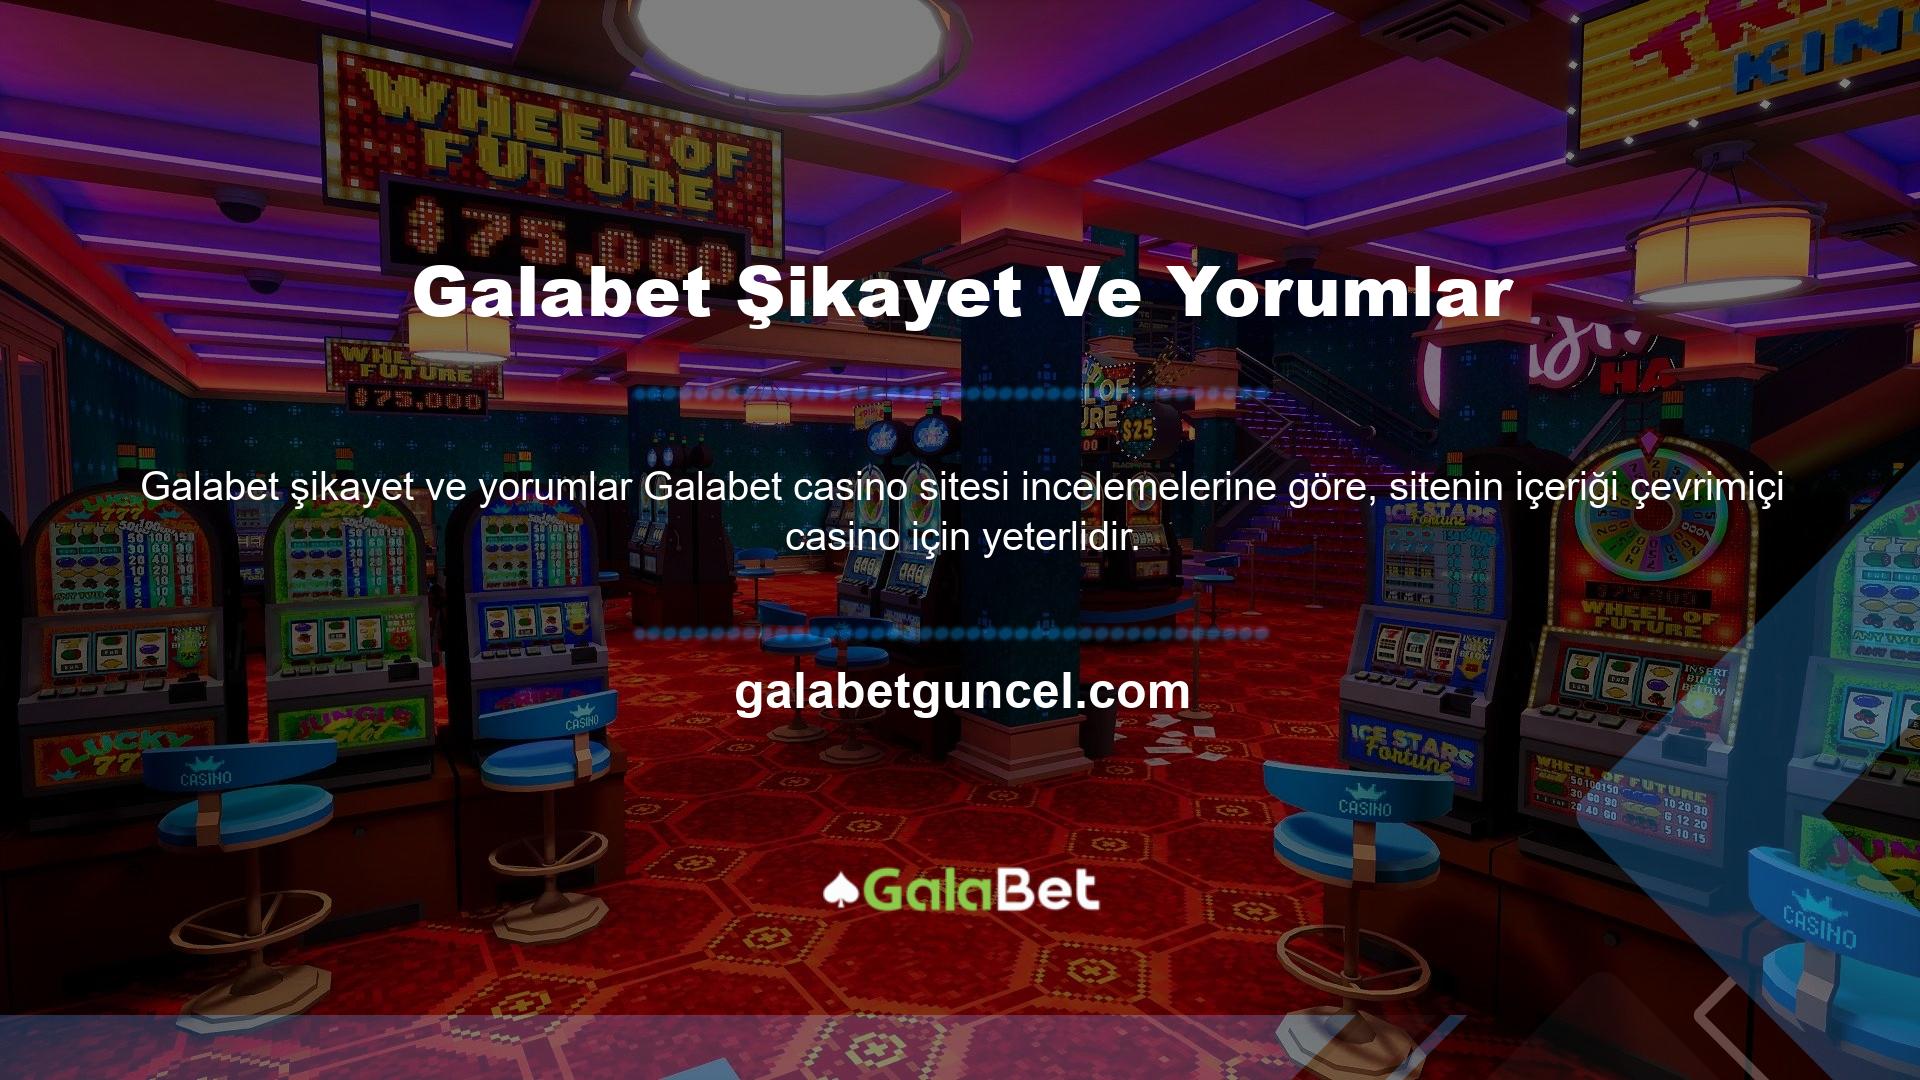 İnternet üzerinden canlı casino sistemine giriş yapabilmek için kullanıcının siteye üye olması gerekmektedir